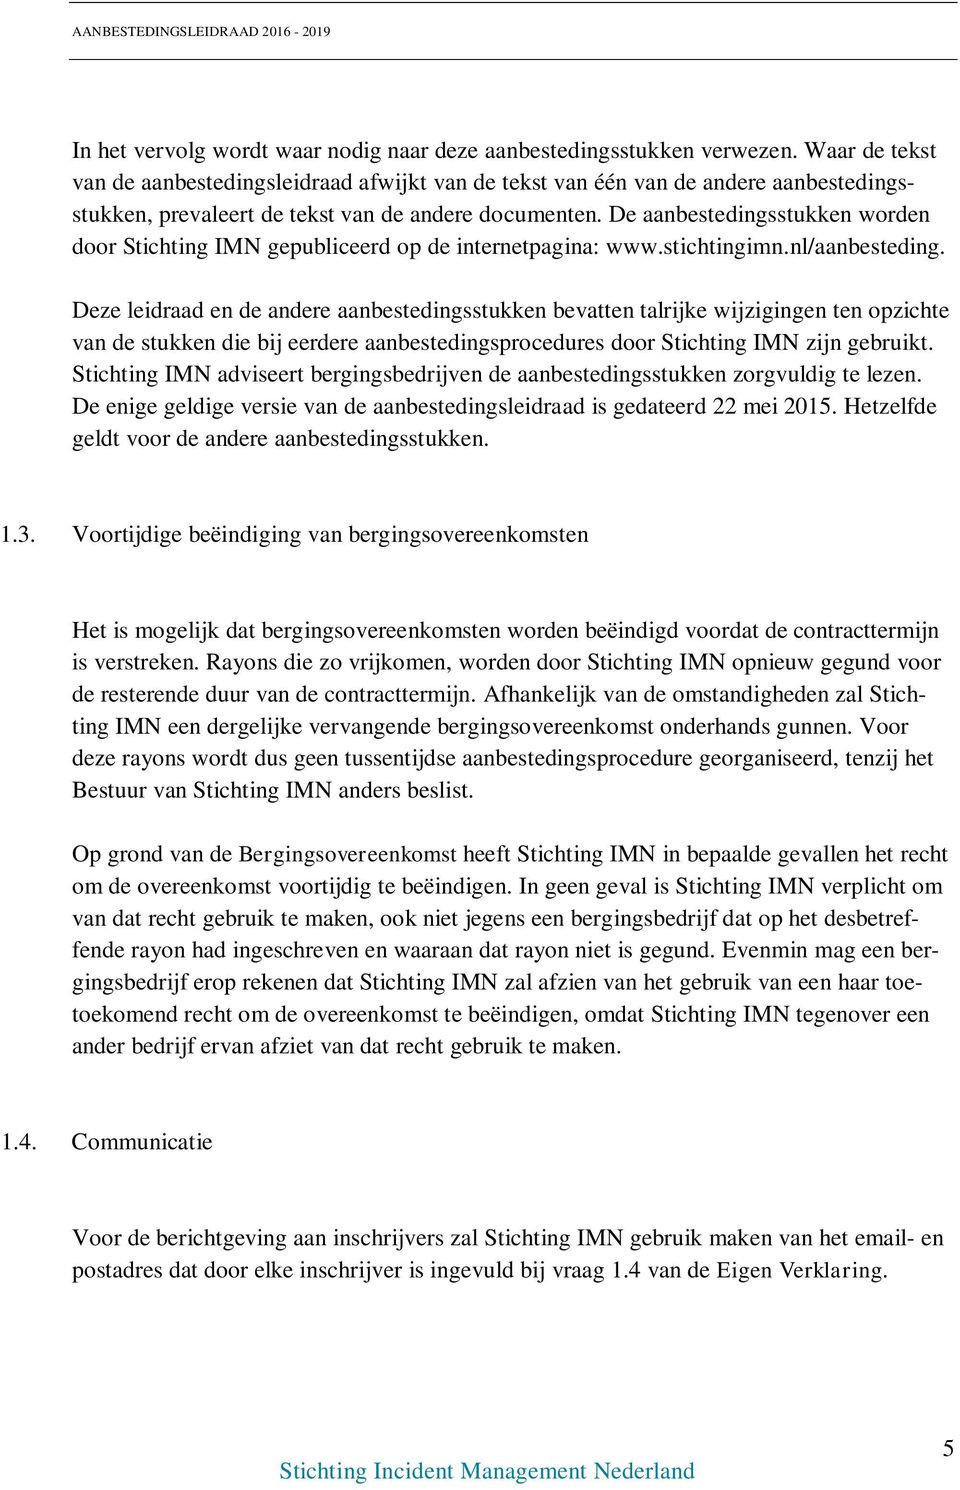 De aanbestedingsstukken worden door Stichting IMN gepubliceerd op de internetpagina: www.stichtingimn.nl/aanbesteding.